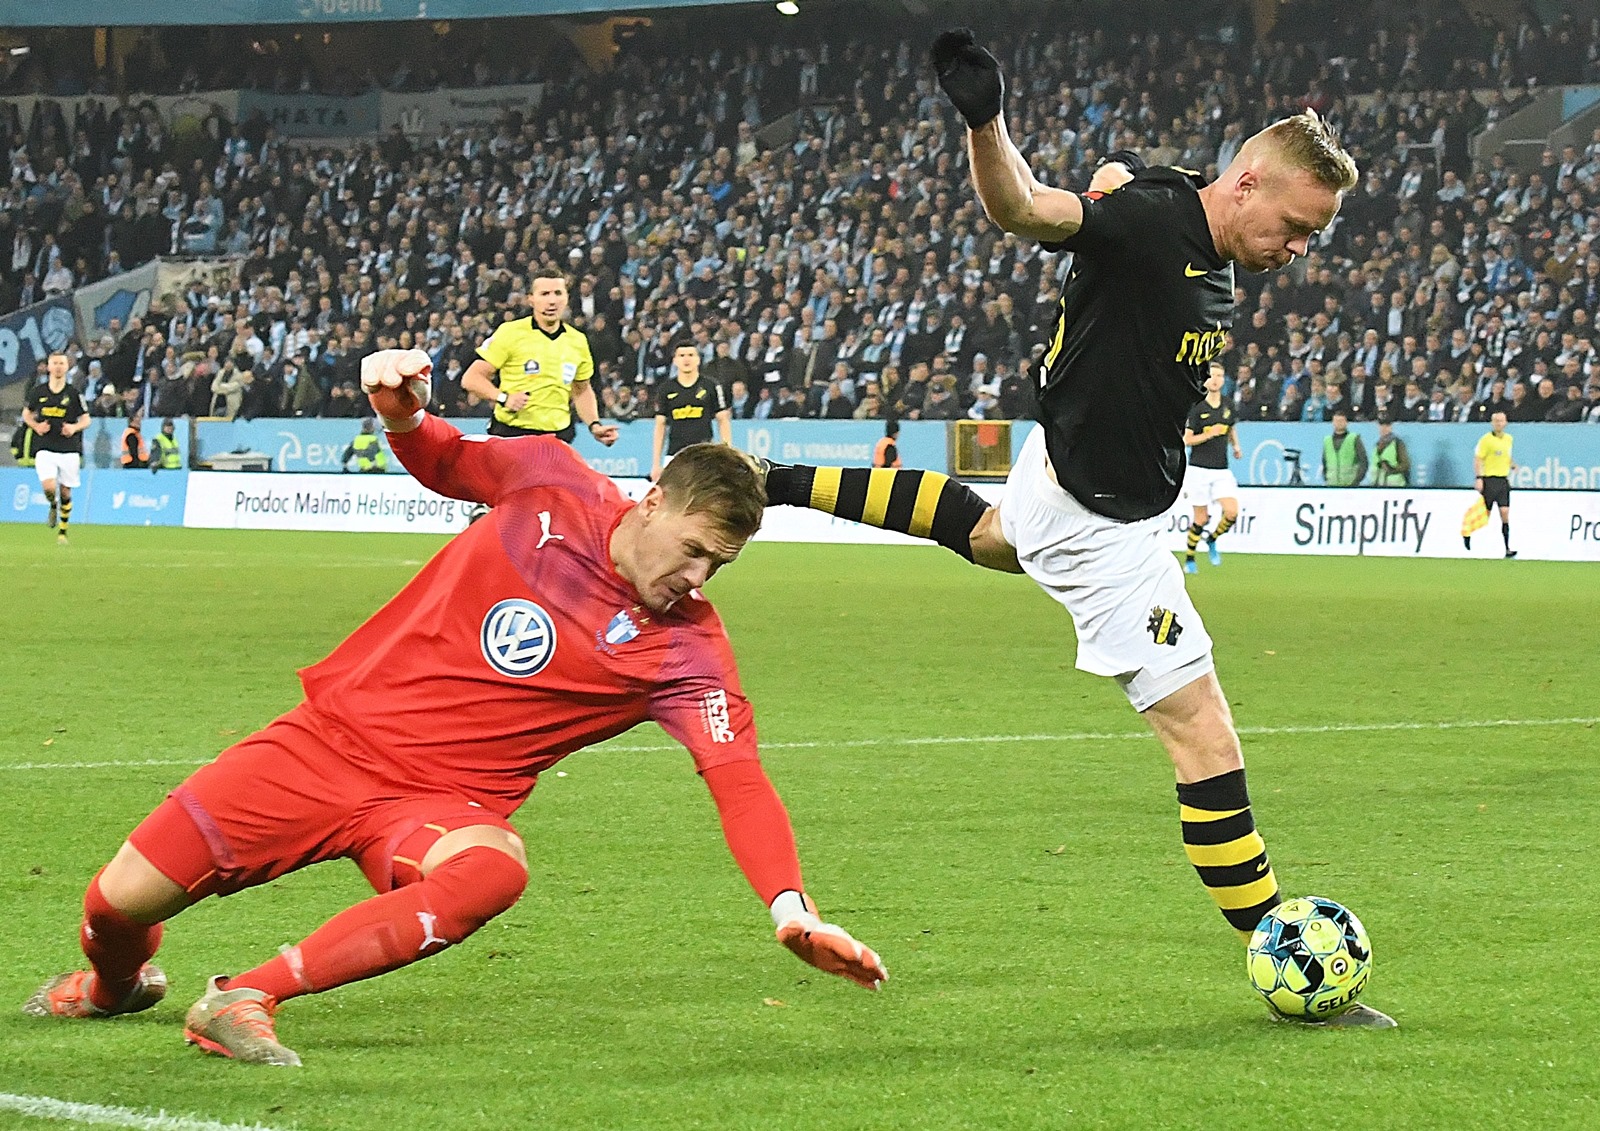 Måndag 28 oktober 2019, kl 19:00  Malmö FF - AIK 2-0 (0-0)  Swedbank Stadion, Malmö